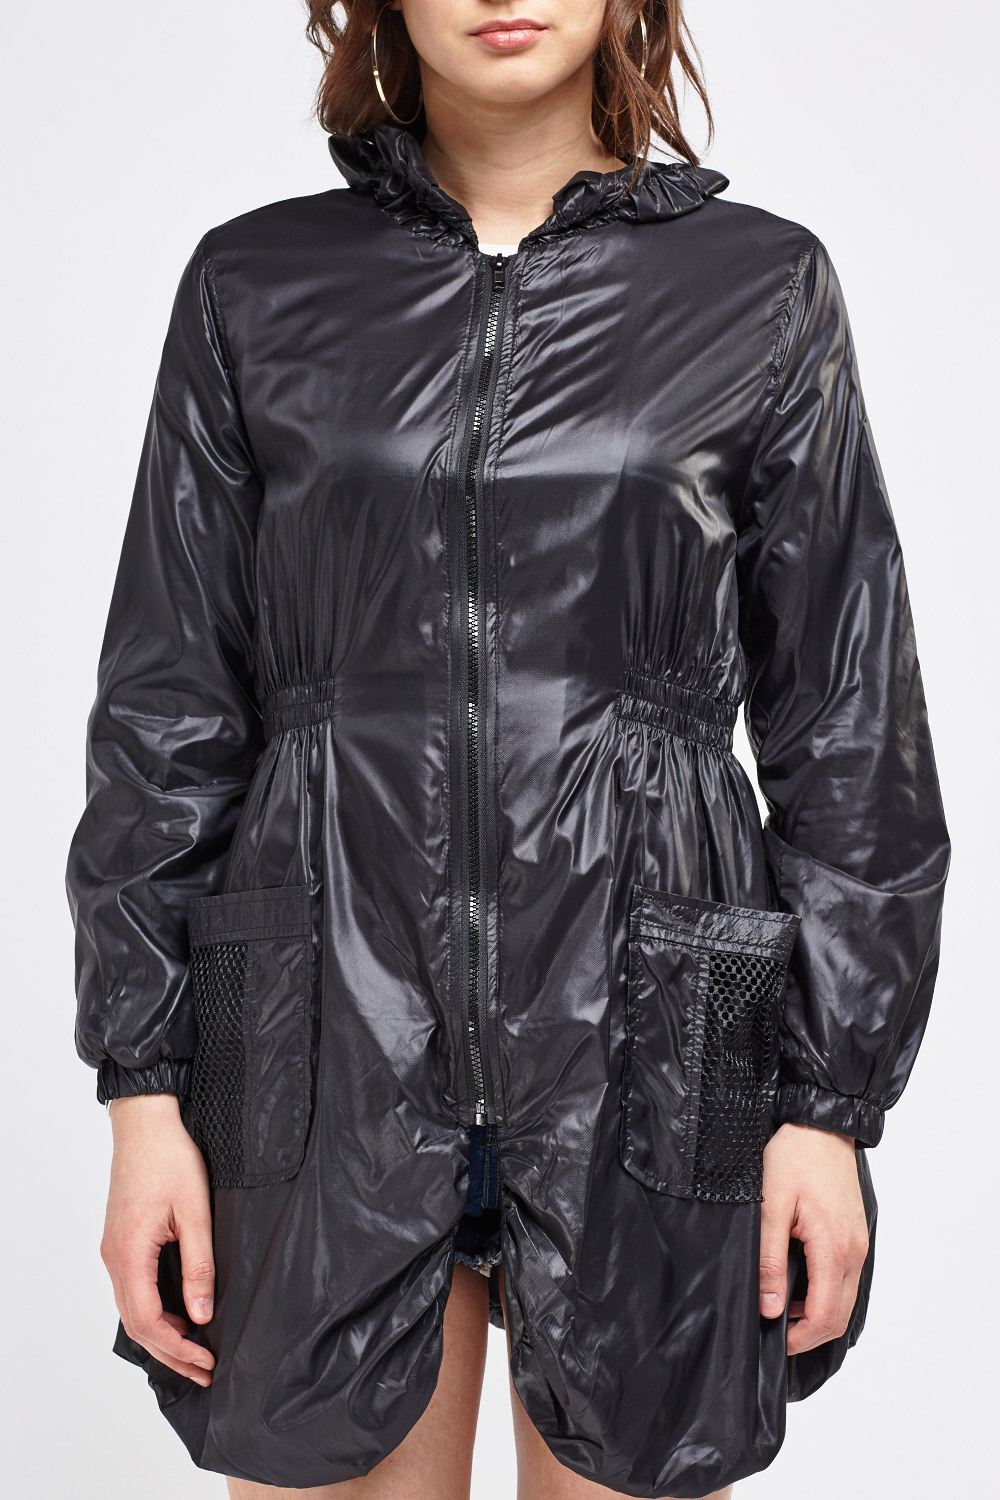 Black Rain Jacket With Elasticated Waist - Just $6